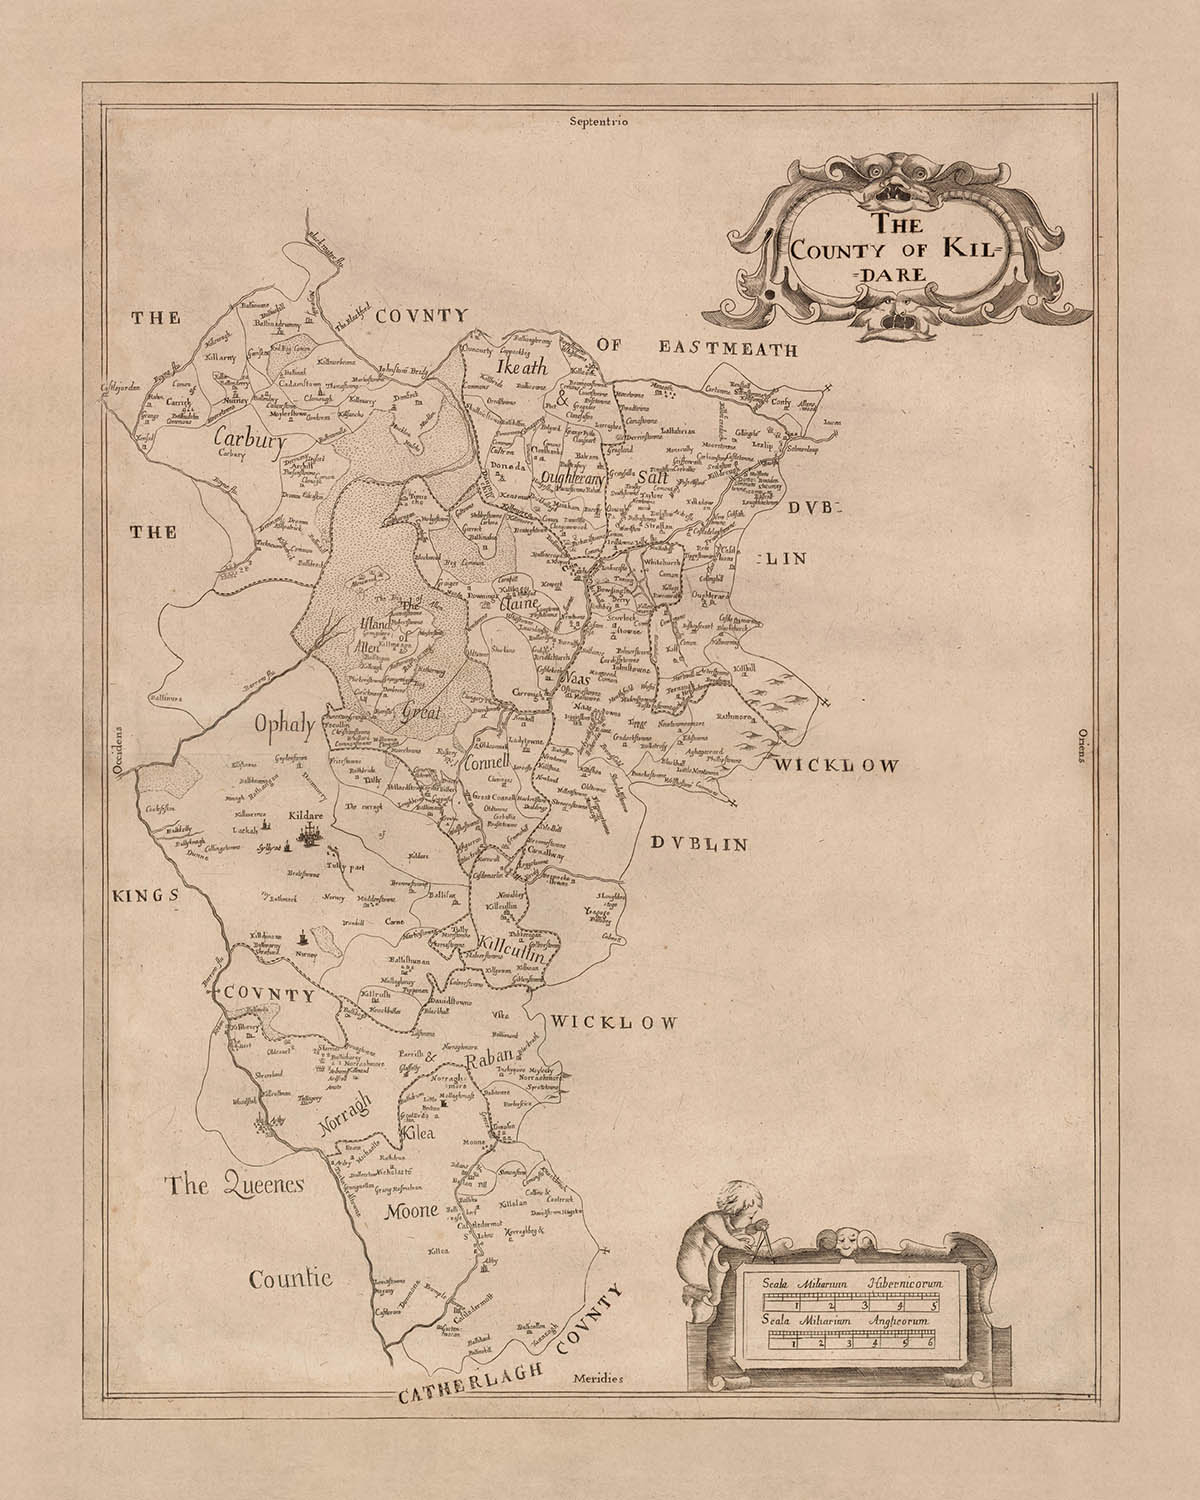 Mapa antiguo del condado de Kildare por Petty, 1685: Kildare, Naas, Maynooth, Castledermot, Monasterevan